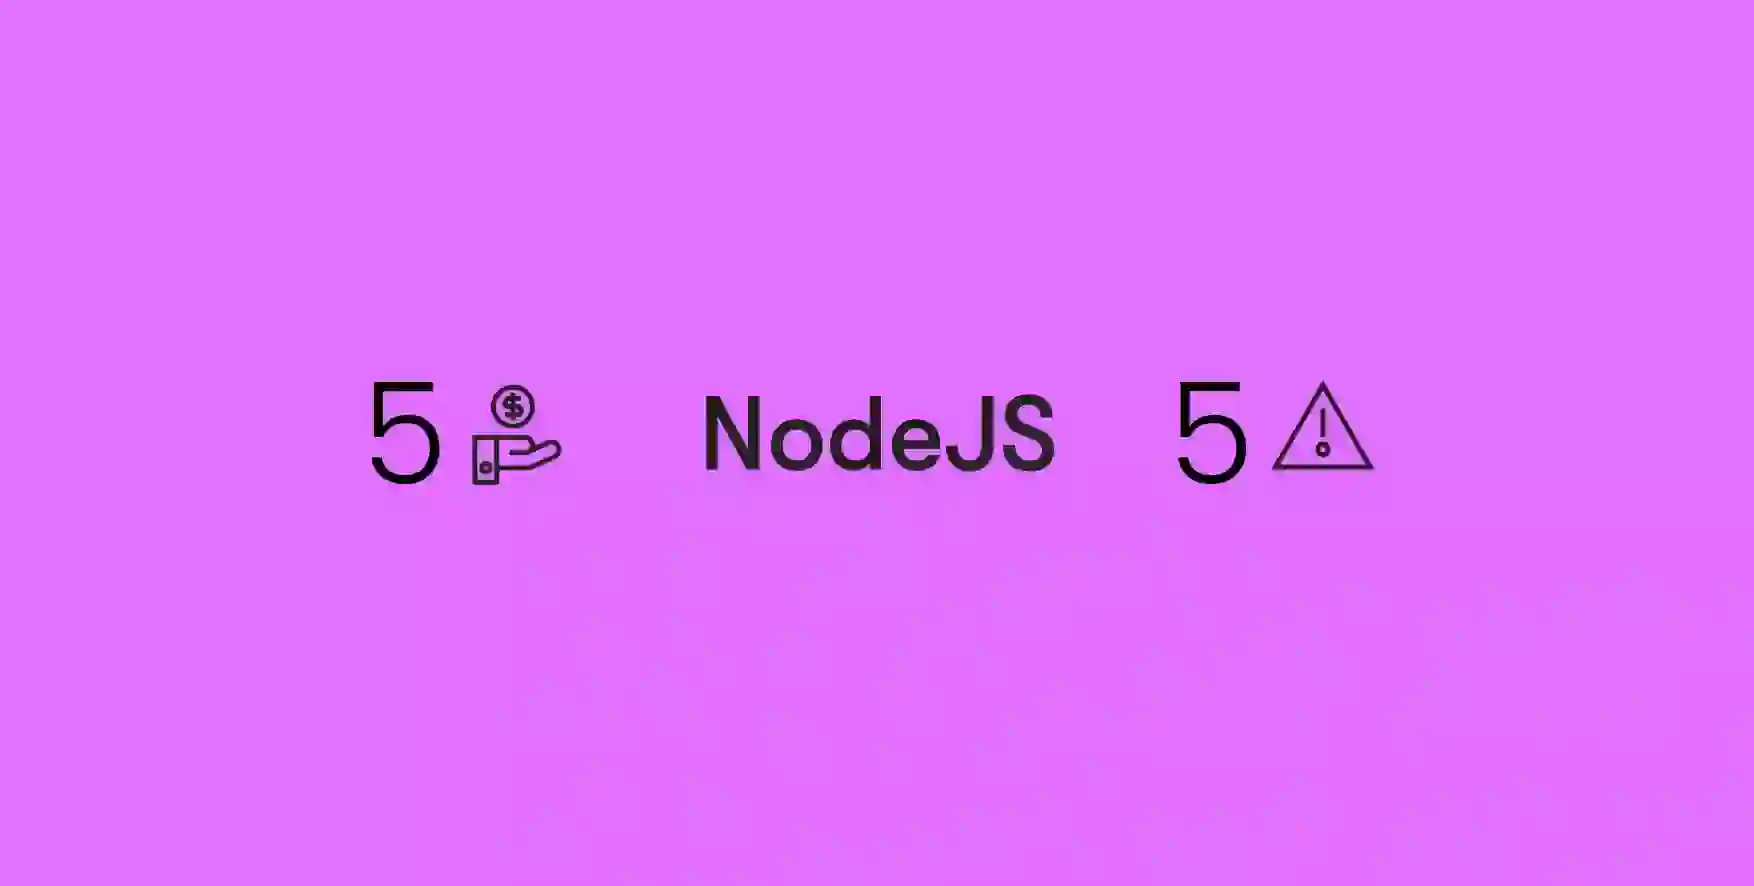 NodeJS on purple background